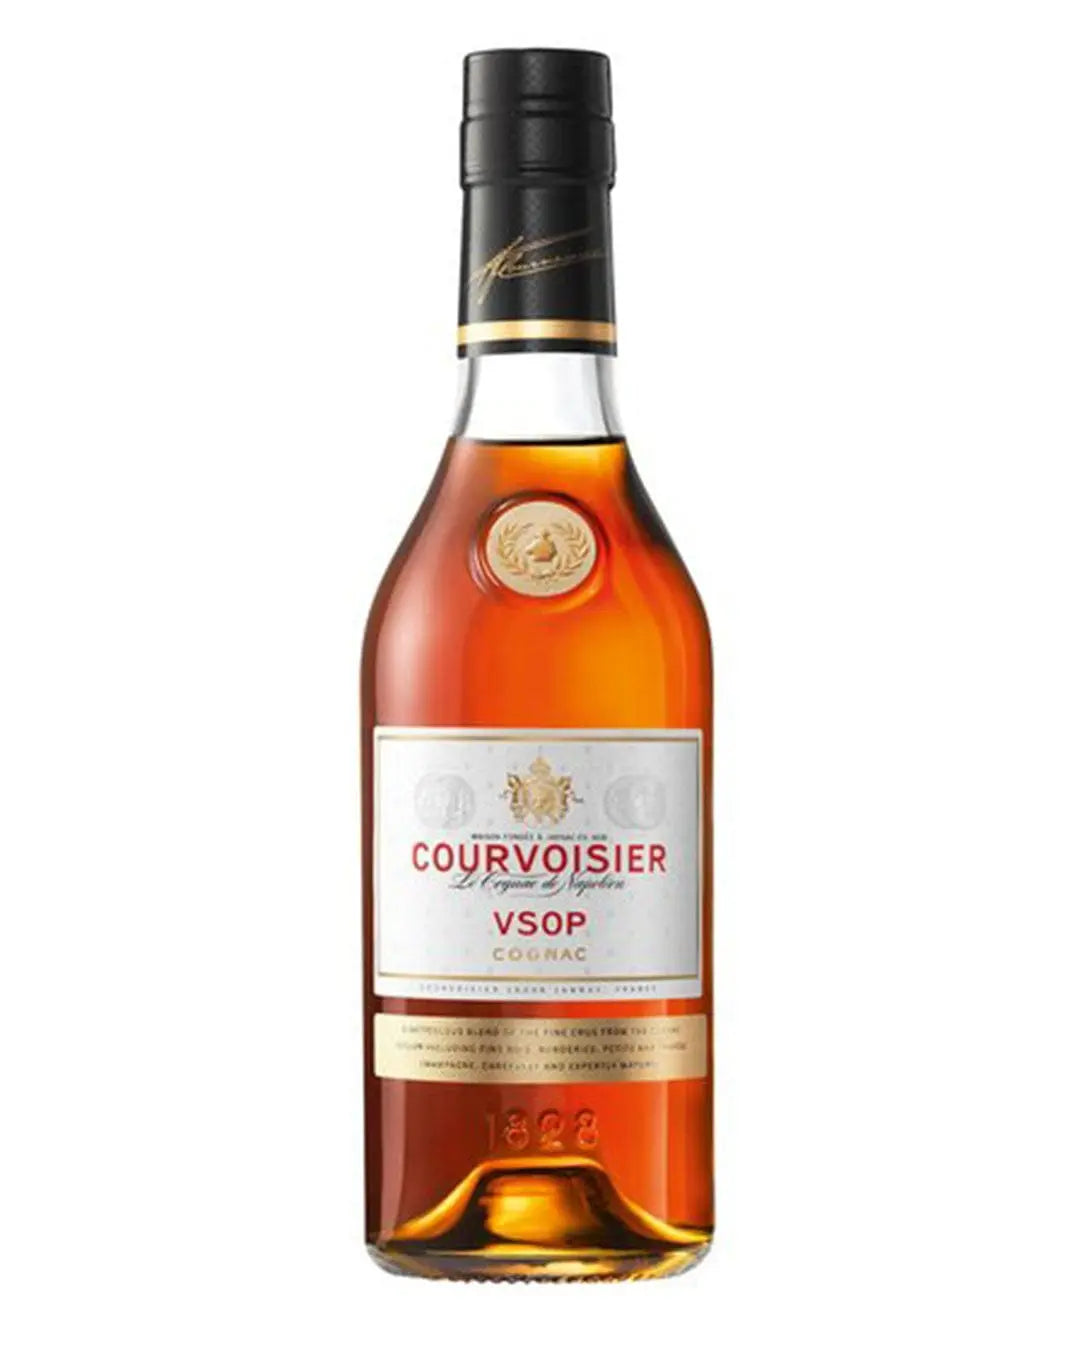 Courvoisier VSOP Cognac, 35 cl – The Bottle Club